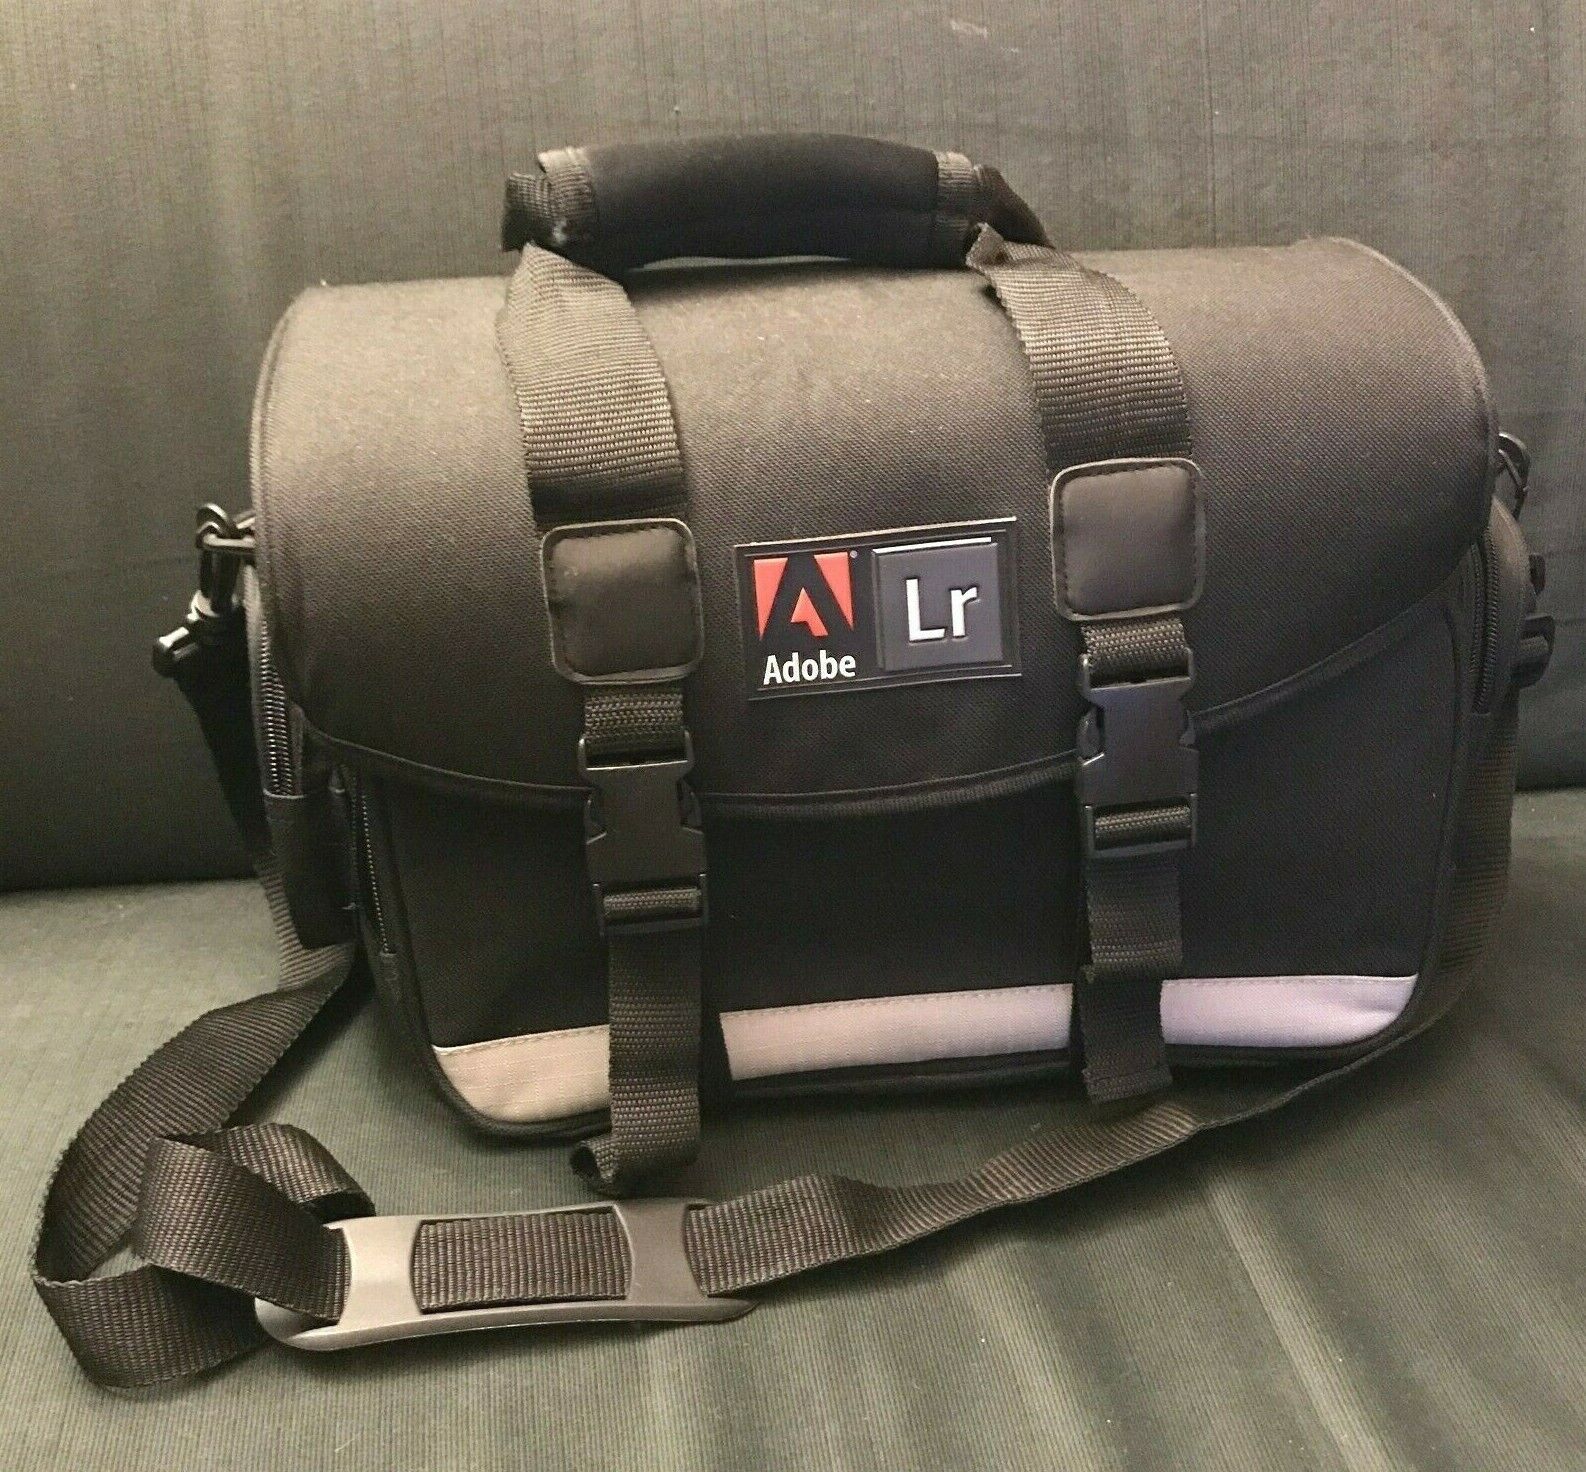 Rare Adobe Lightroom DSLR Camera Bag w/Carrying Handle and Shoulder Strap